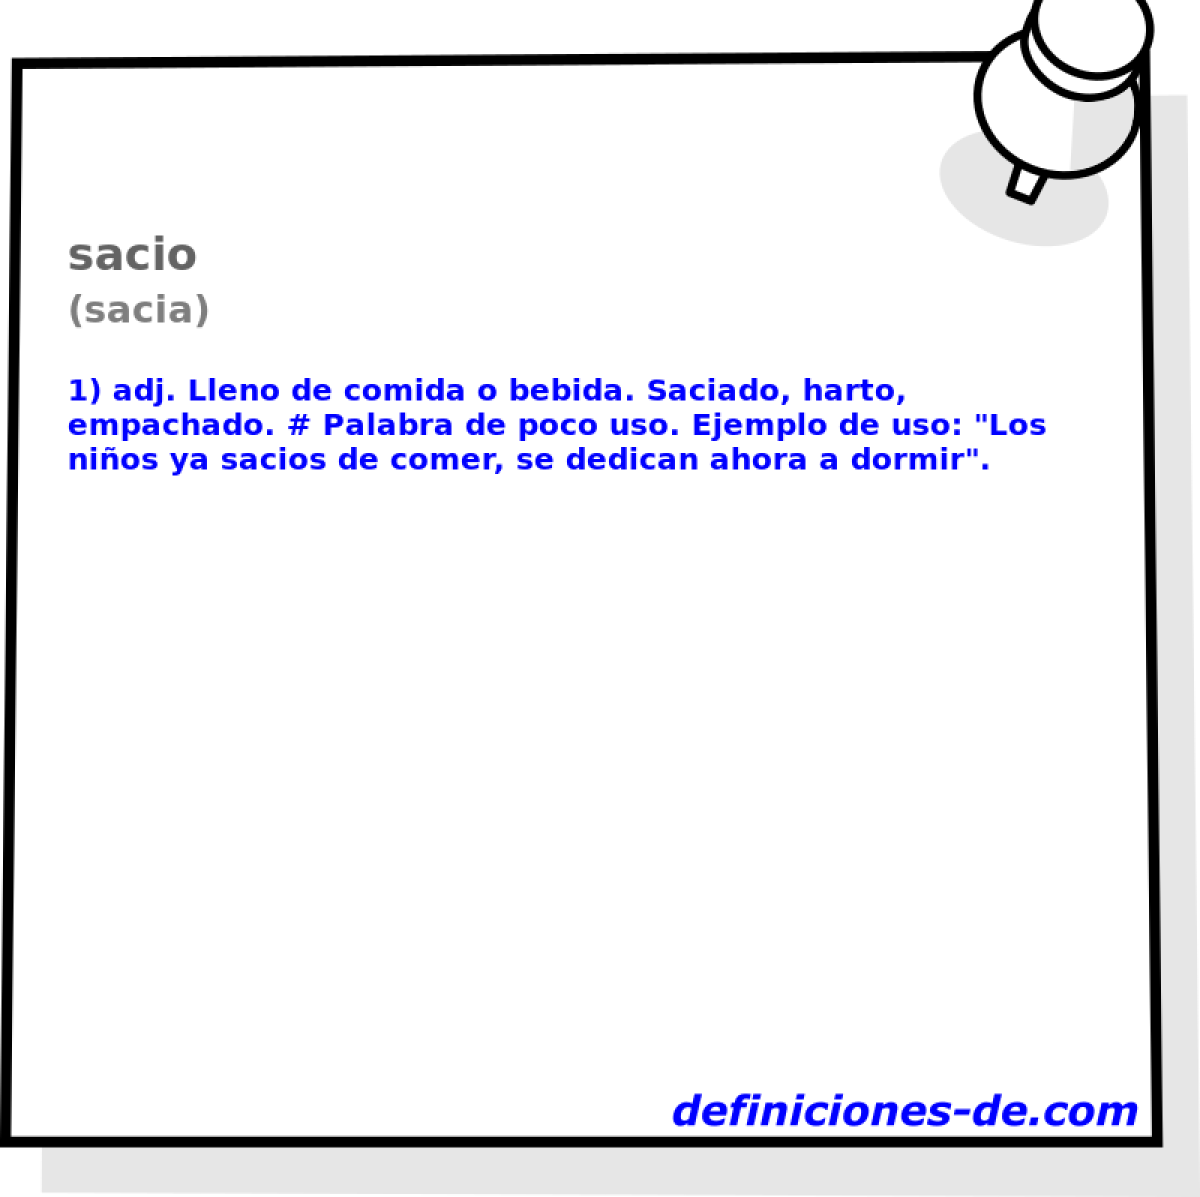 sacio (sacia)